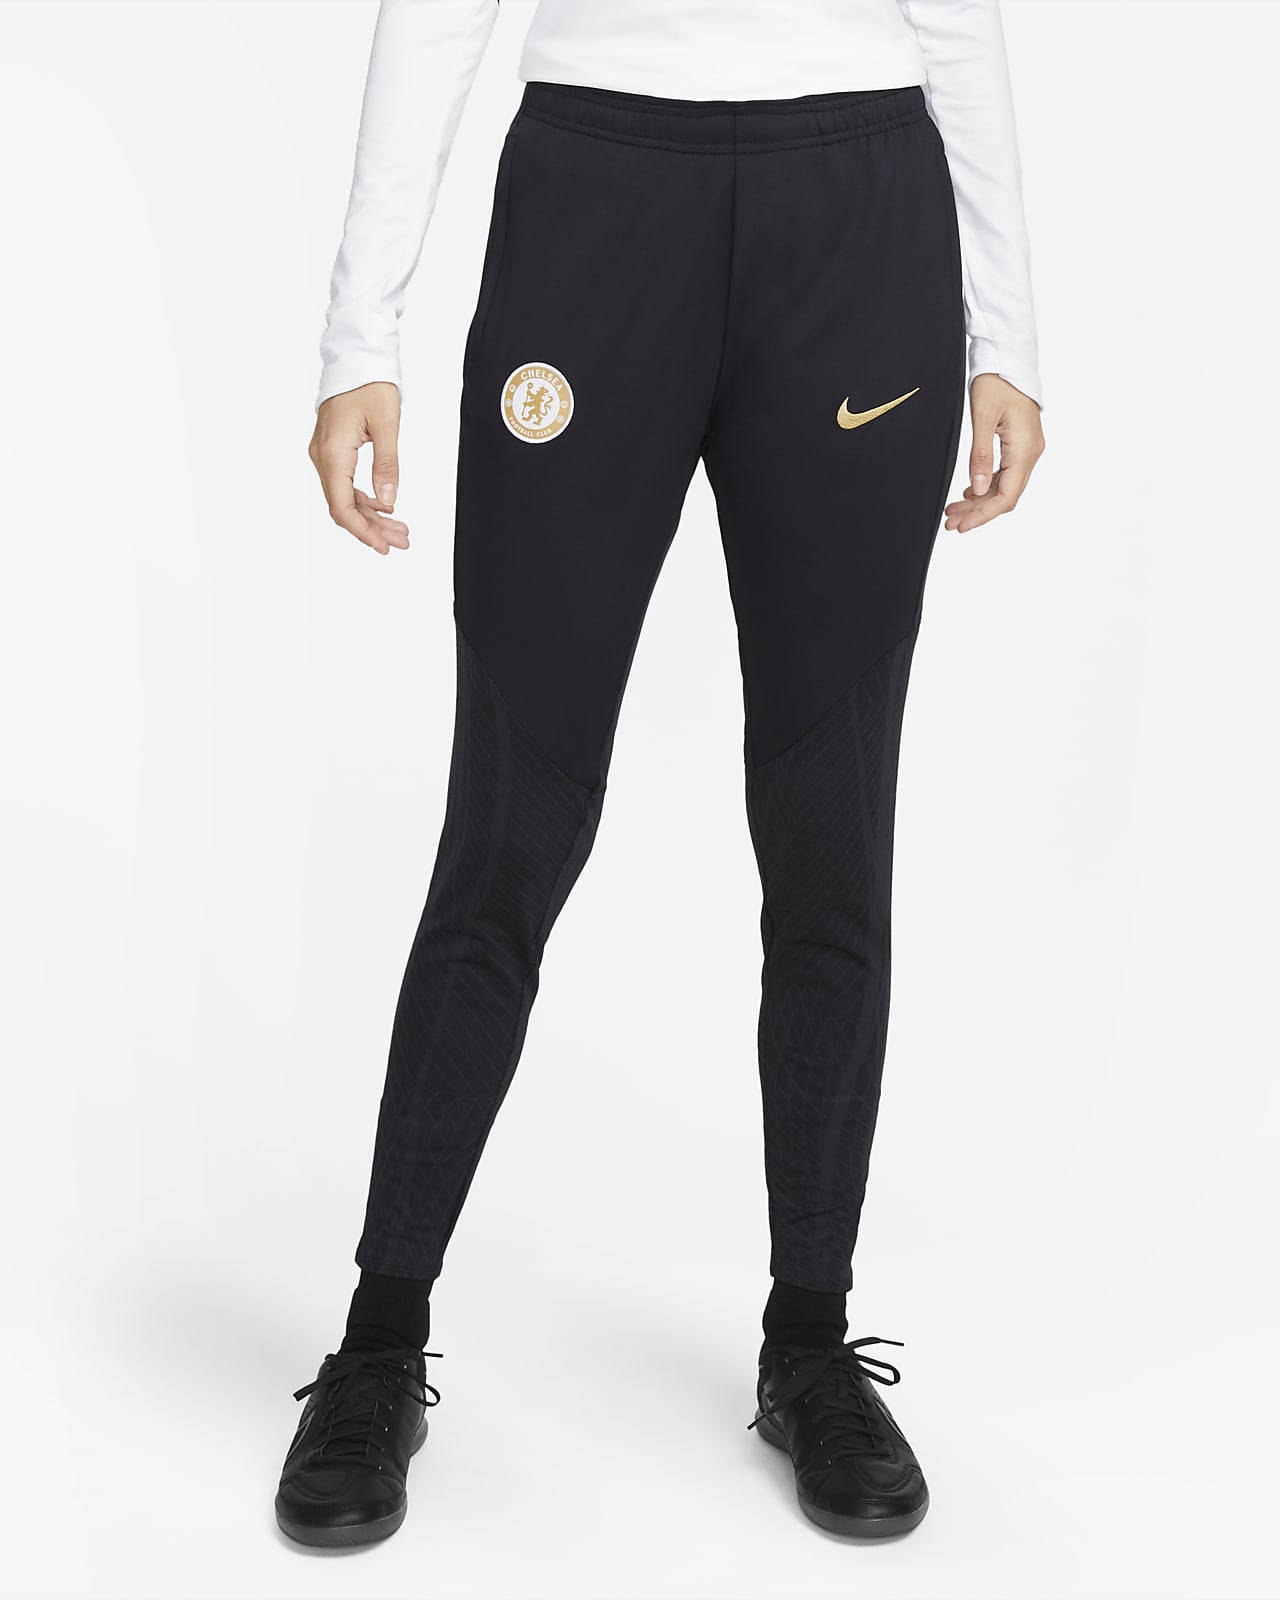 Dámské pleteninové fotbalové kalhoty Nike Dri-FIT Chelsea FC Strike